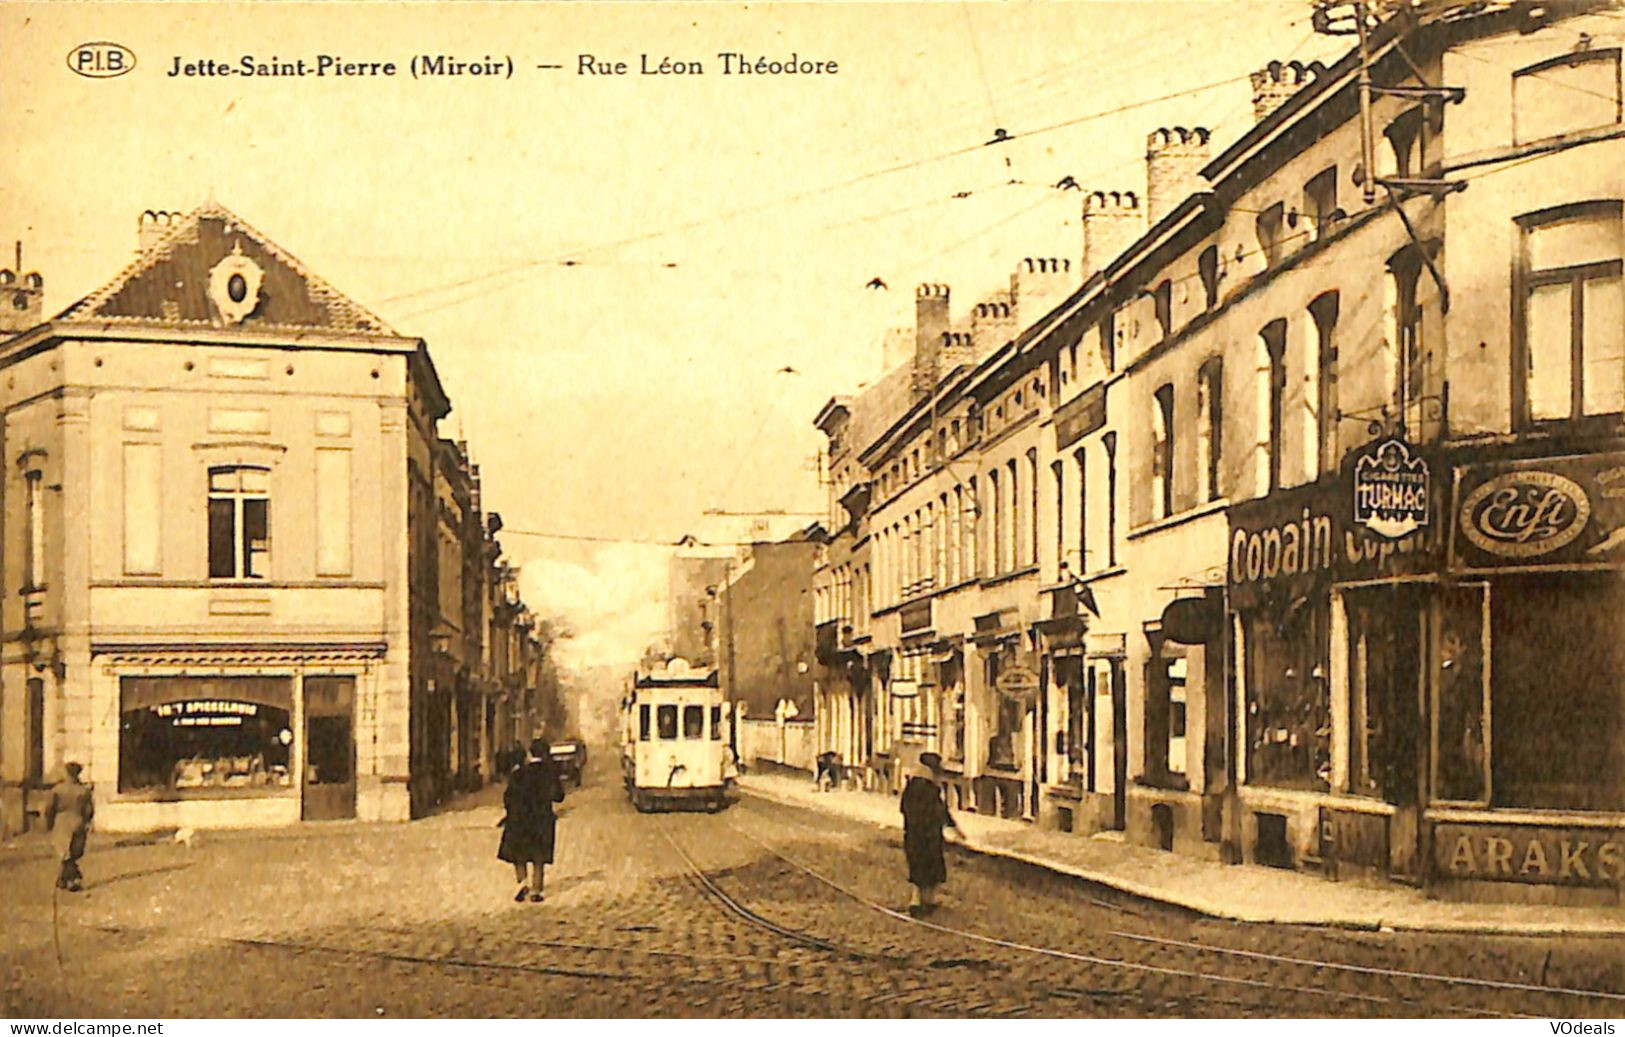 Belgique - Brussel - Bruxelles - Jette St. Pierre (Miroir) - Rue Léon Théodore - Jette